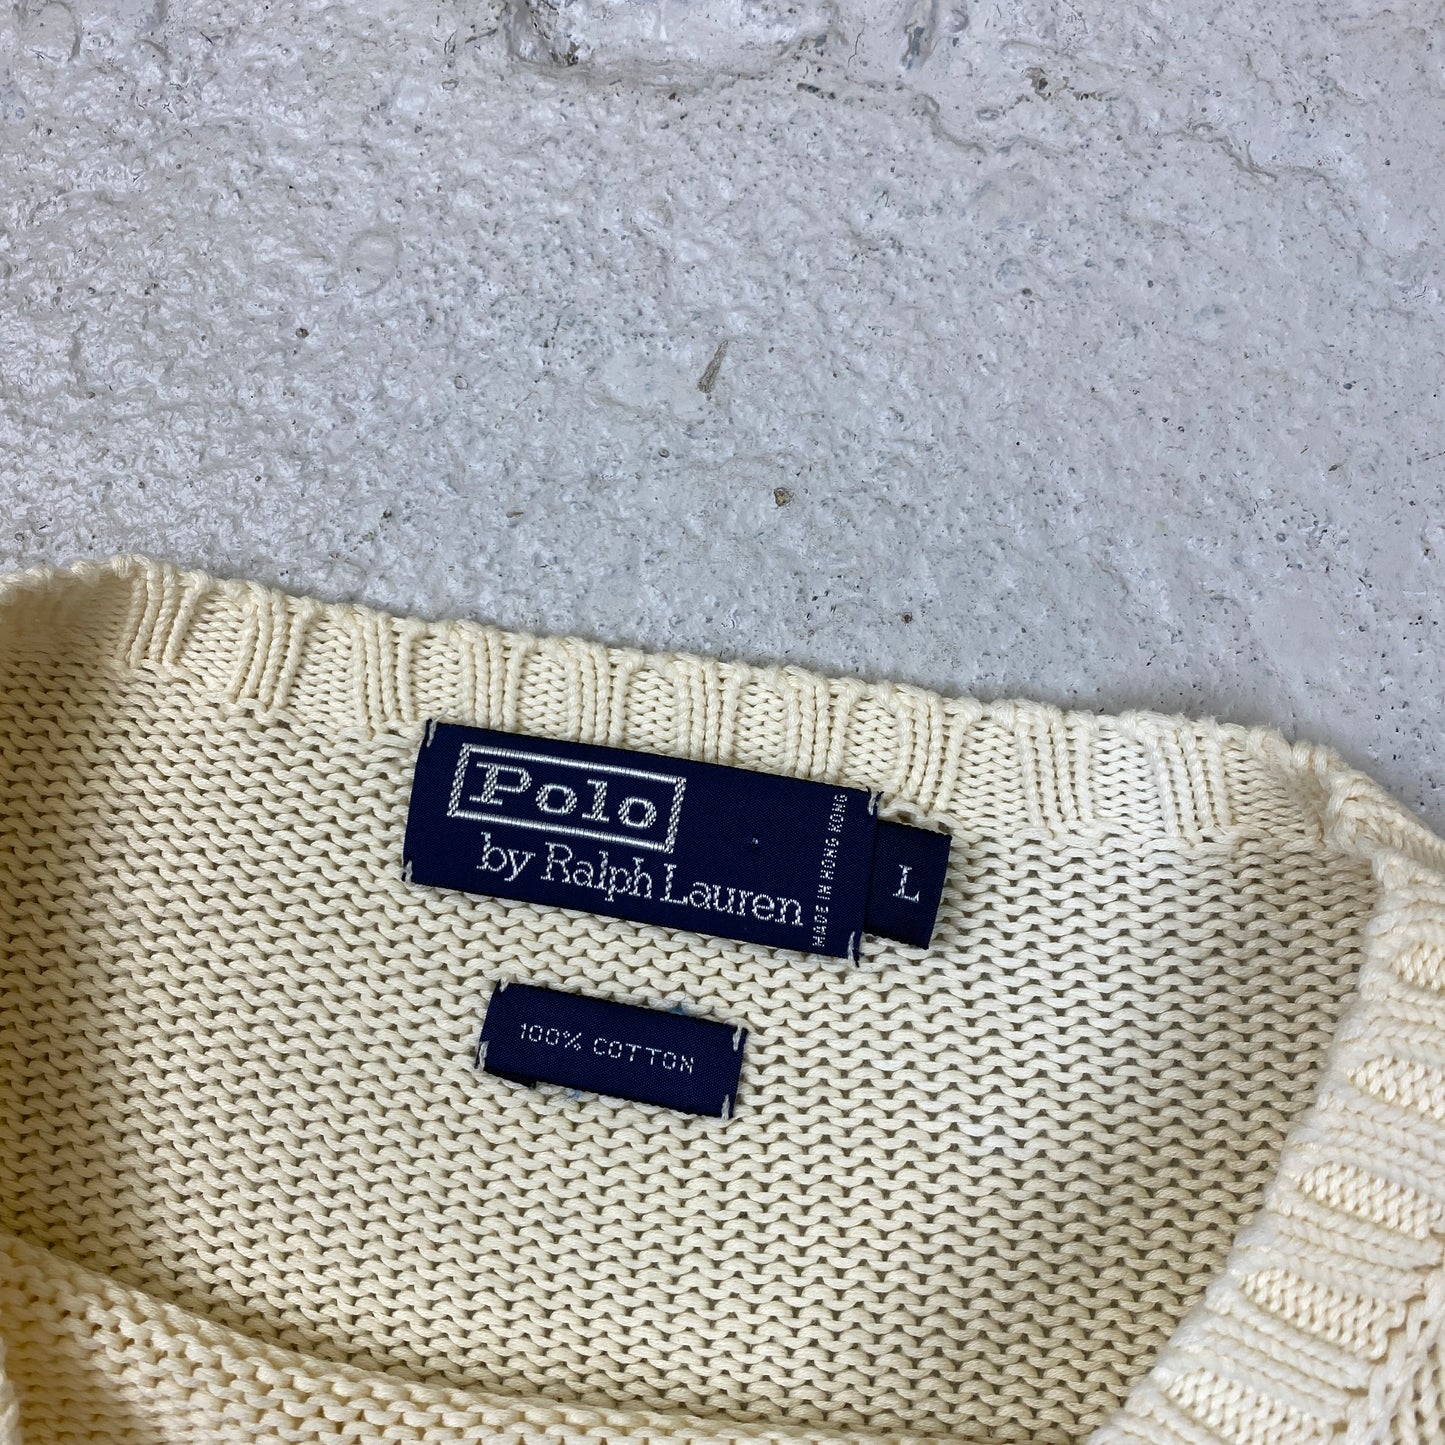 Polo Ralph Lauren knit sweater (L-XL)